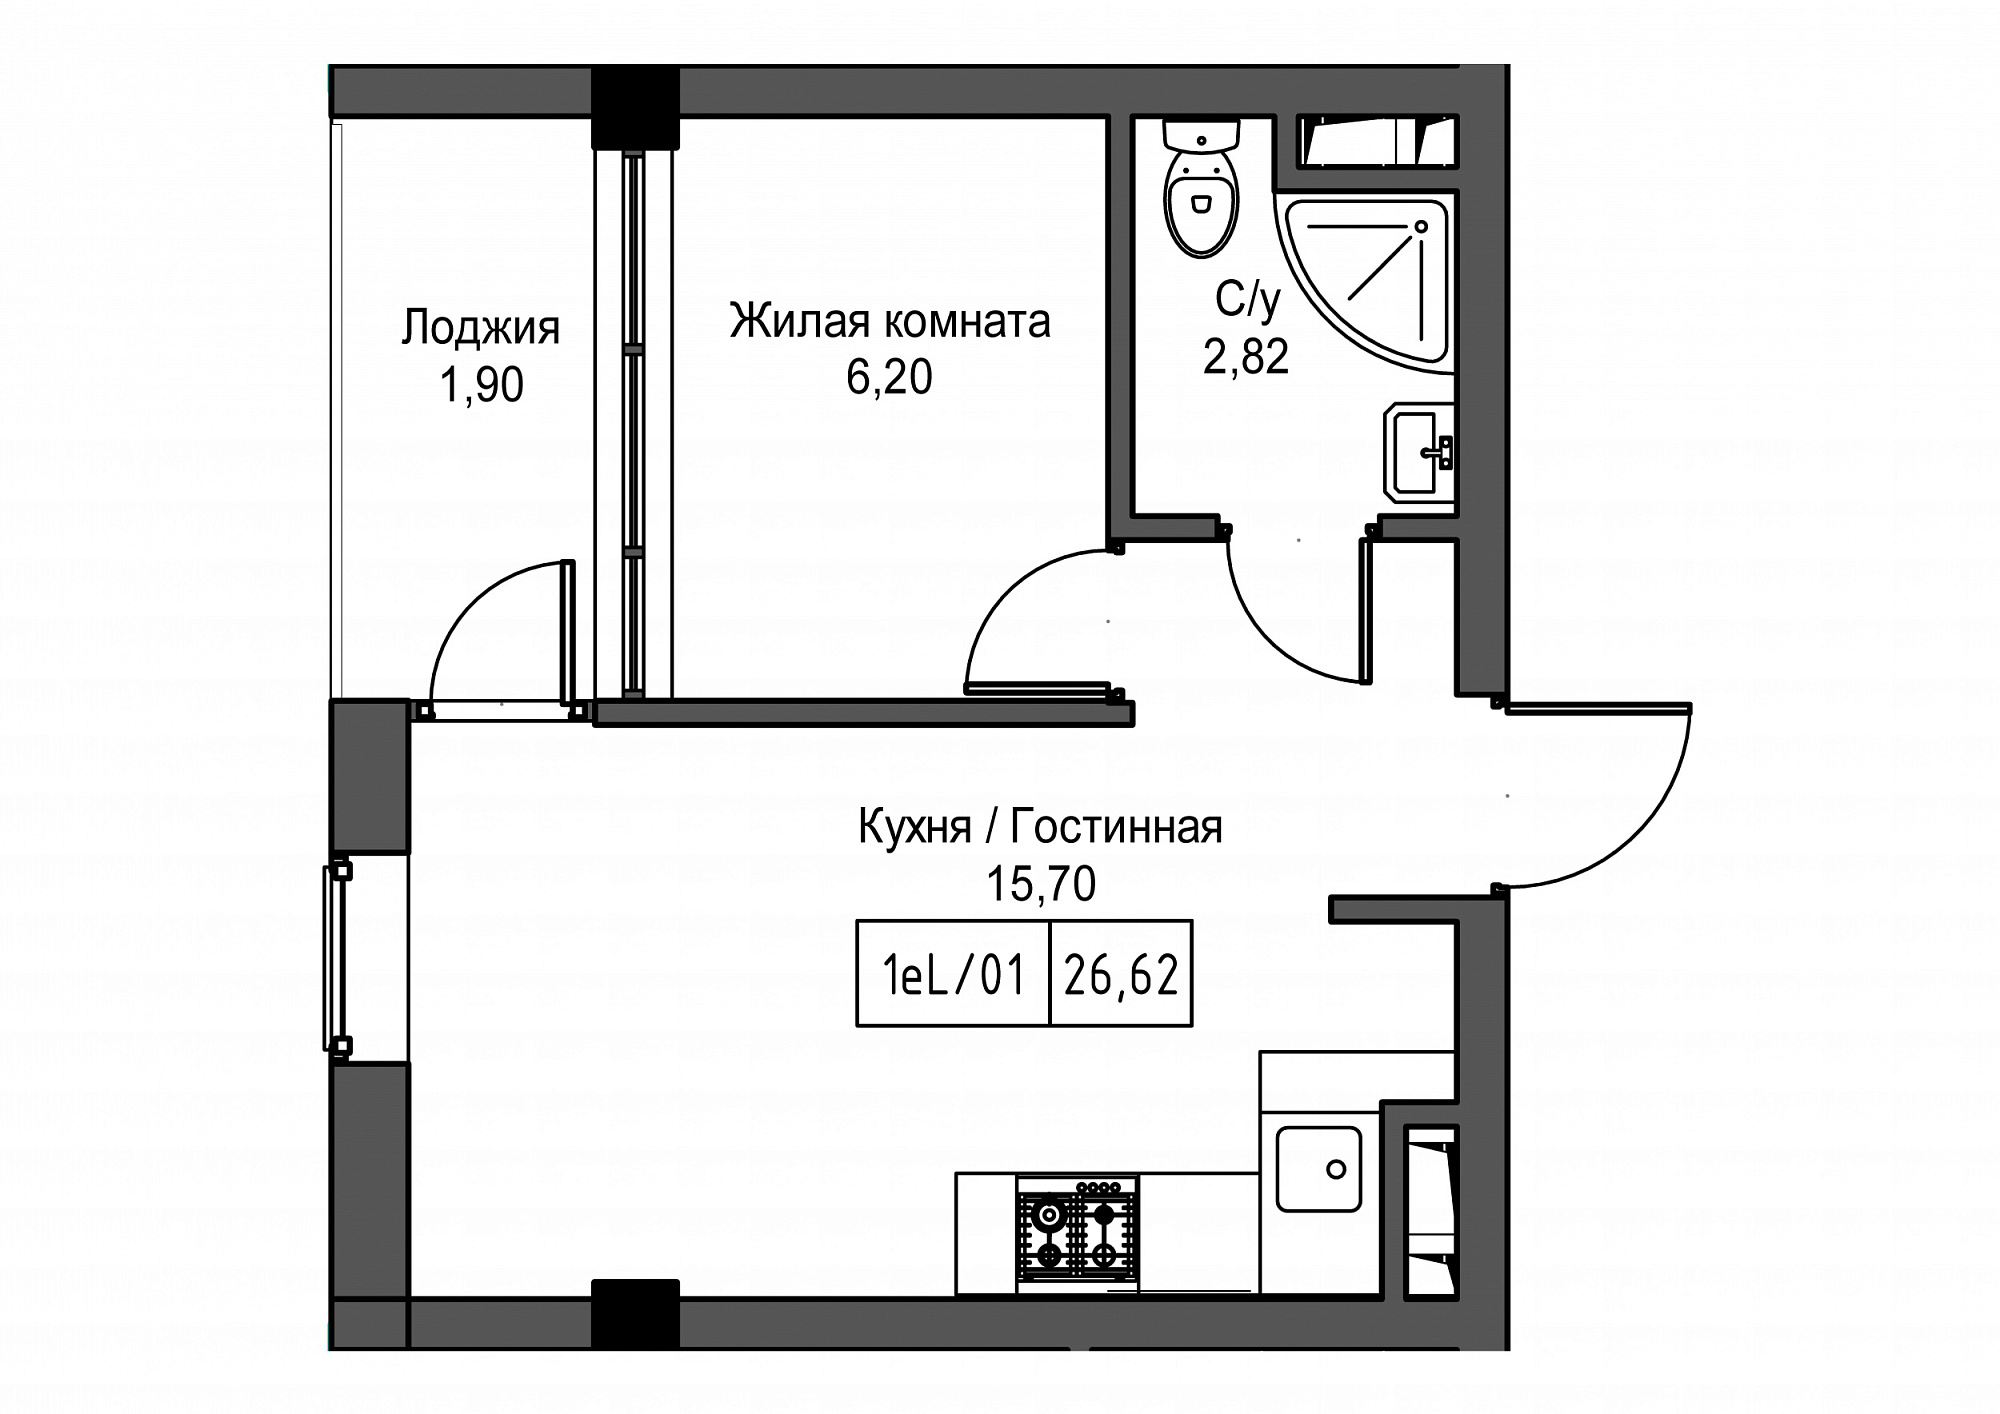 Планировка 1-к квартира площей 26.62м2, UM-002-02/0097.